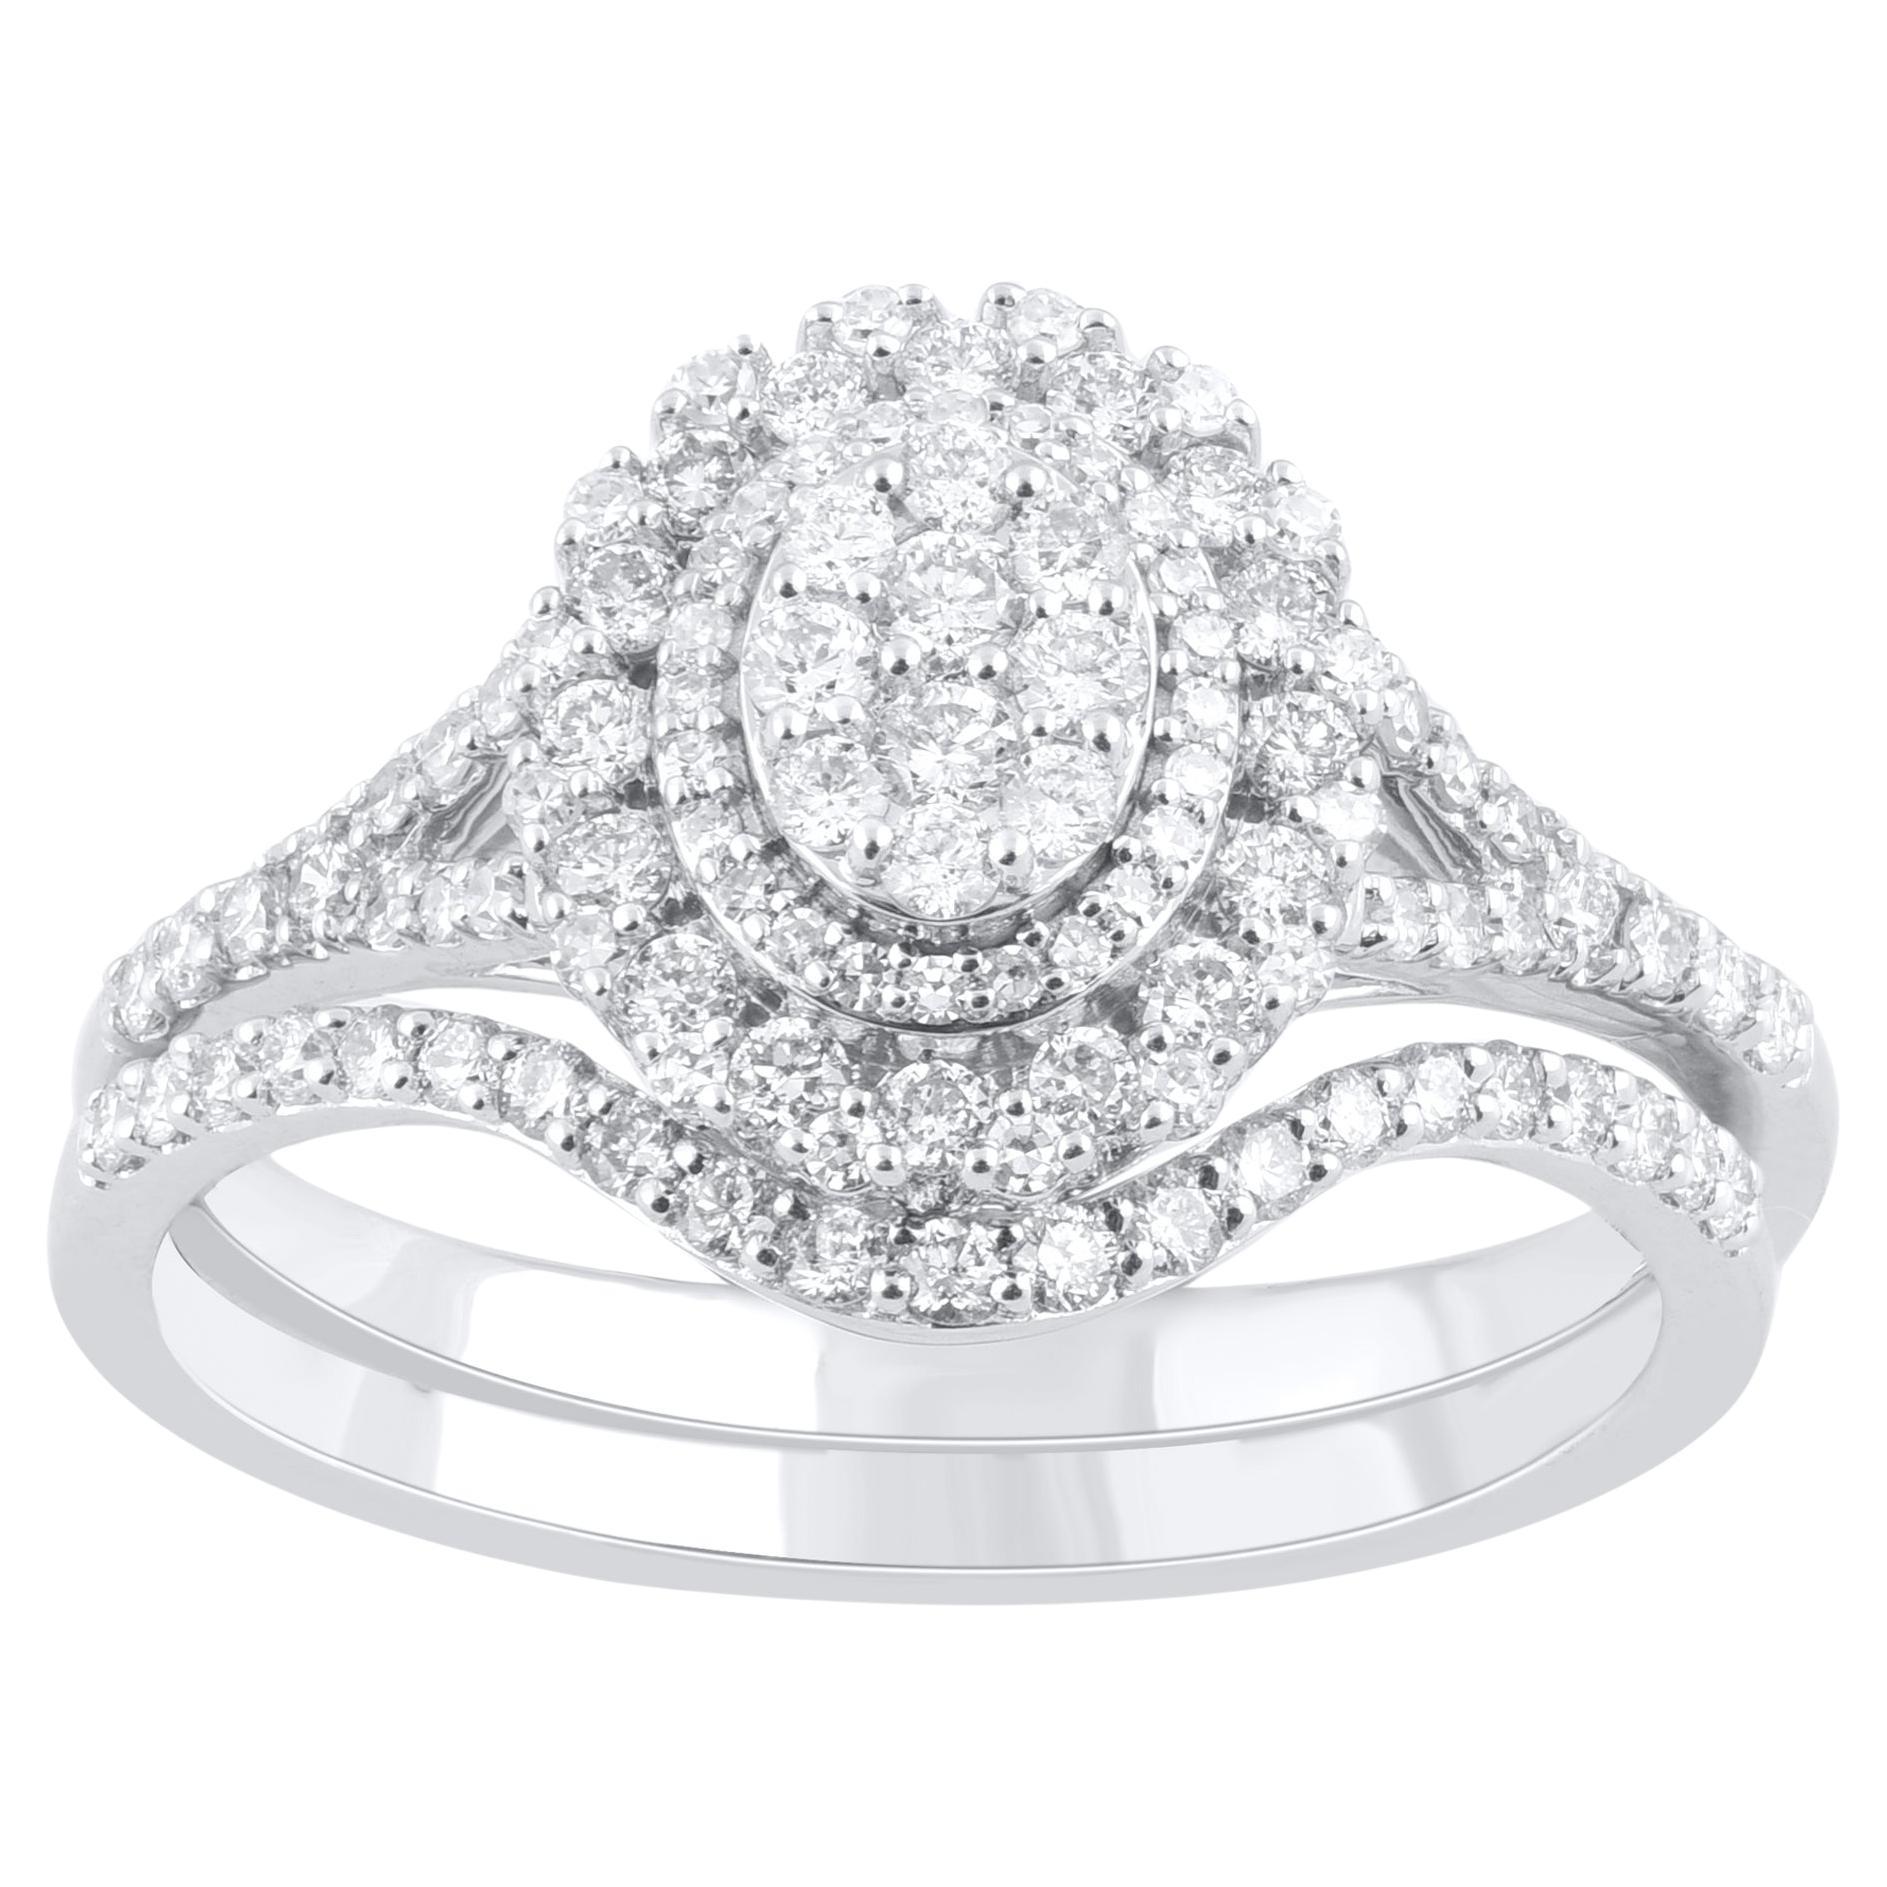 TJD 0.65 Carat Natural Round Cut Diamond 18 Karat White Gold Bridal Ring Set For Sale